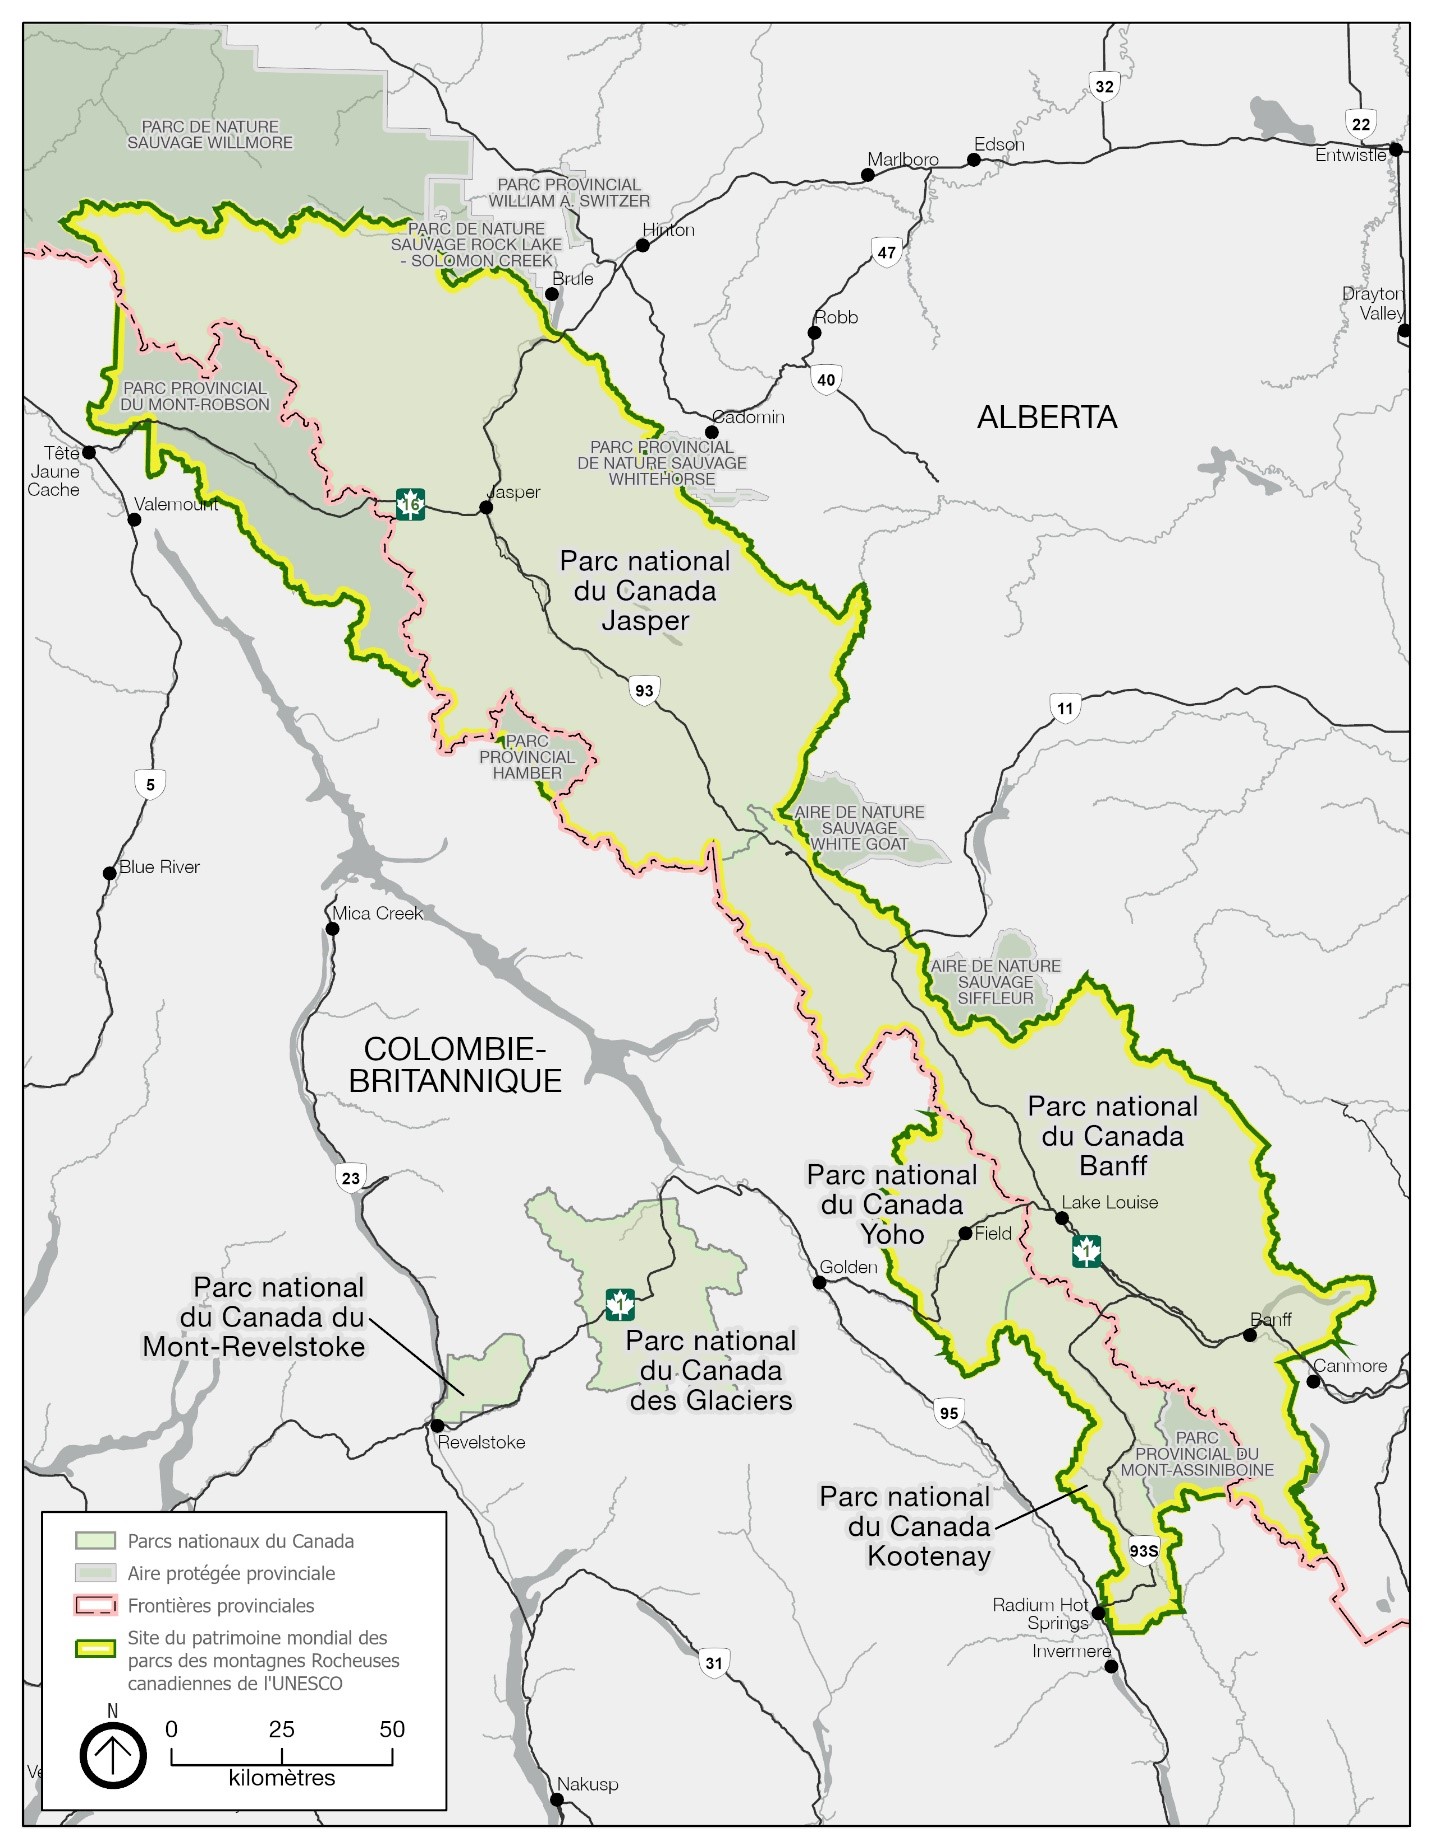 Carte montrant le cadre régional du parc national du Canada Jasper et comprenant les aires protégées nationales et provinciales adjacentes qui longent la frontière entre l’Alberta et la Colombie-Britannique.